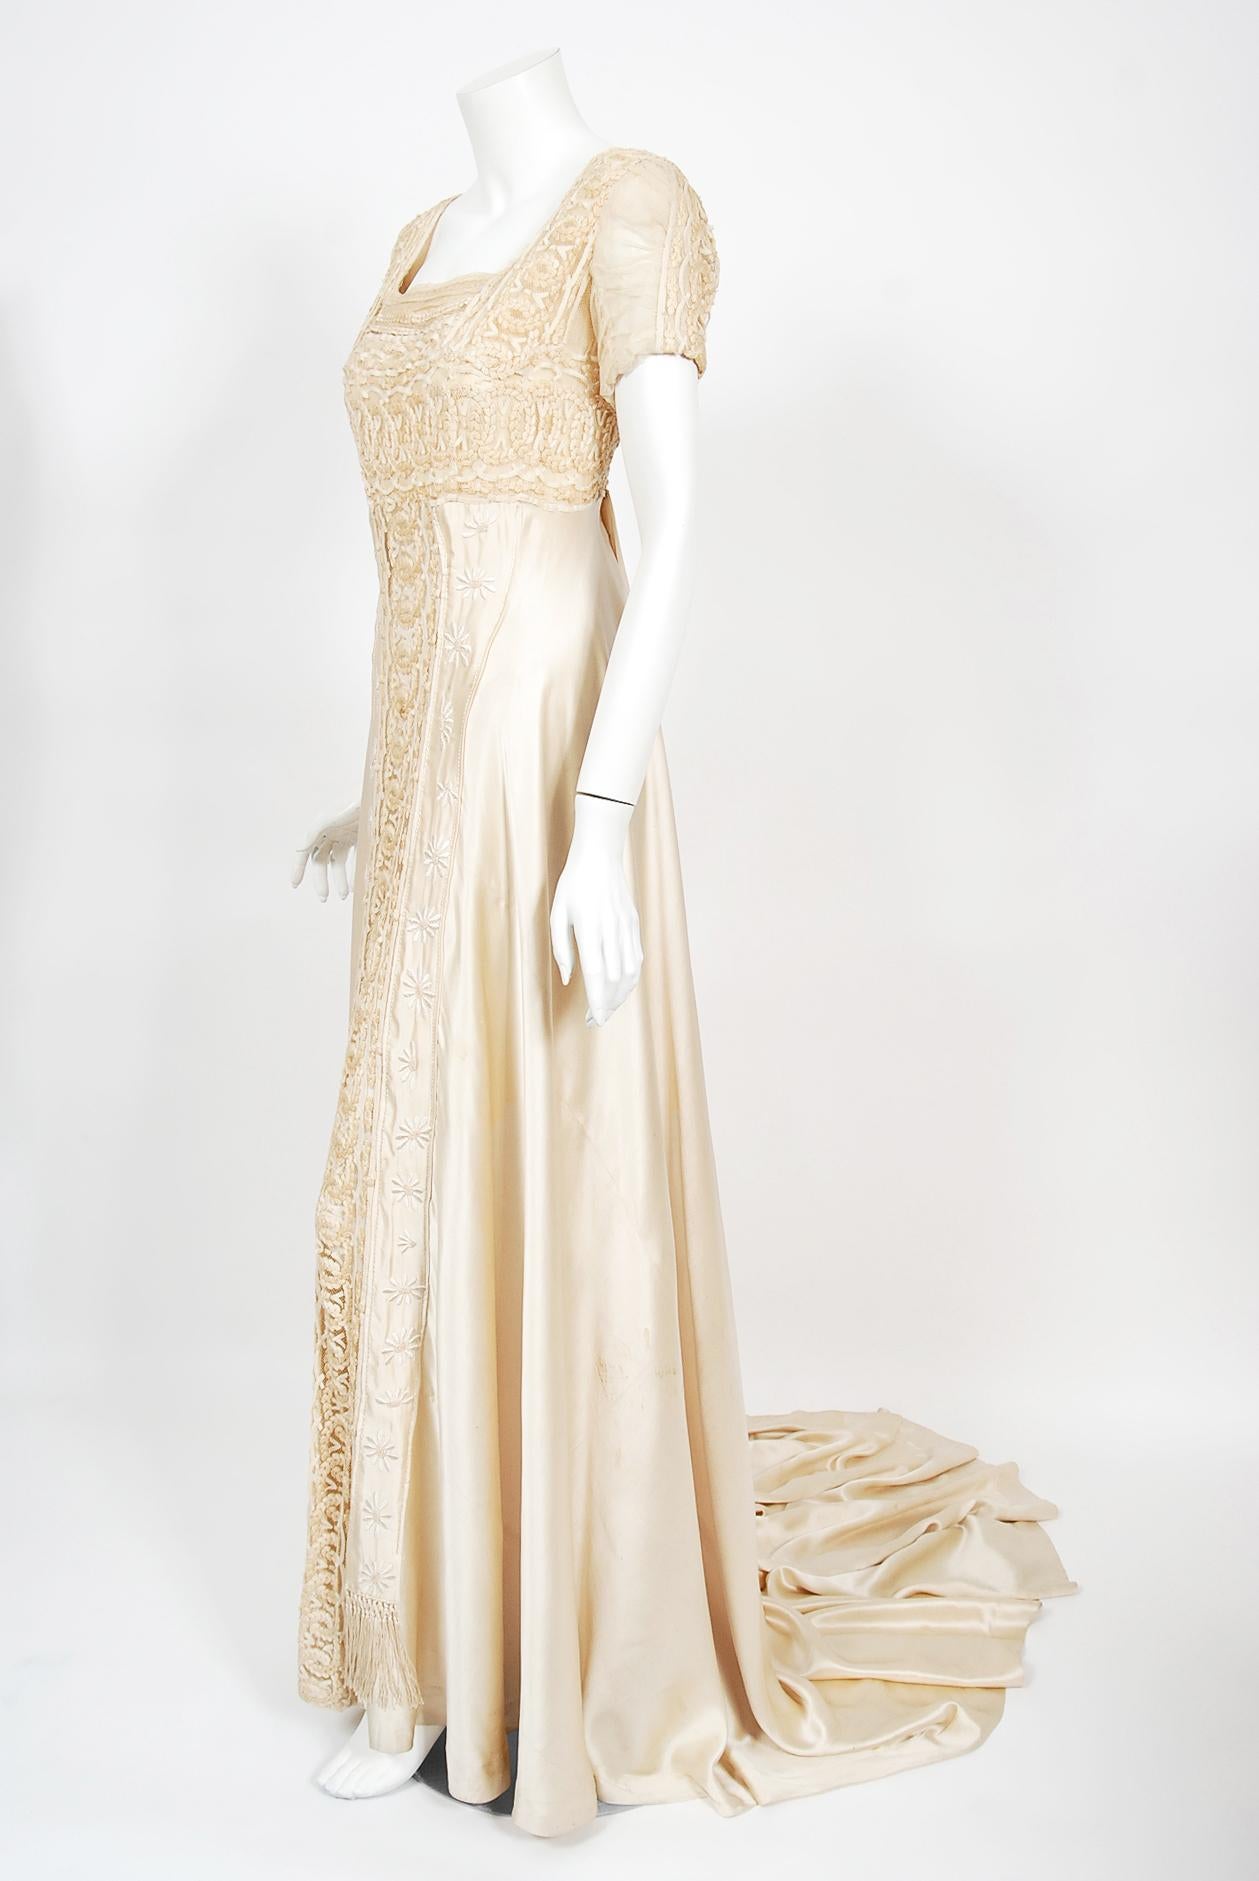 Ätherische Brautkleider aus dem frühen 20. Jahrhundert sind ein Dauerbrenner, und dieses Kleid ist ein echter Hingucker bei einer Hochzeit. Der mühelose Stil des Kleidungsstücks ist so modern, dass die komplizierten Handstickereien und feinen Stoffe